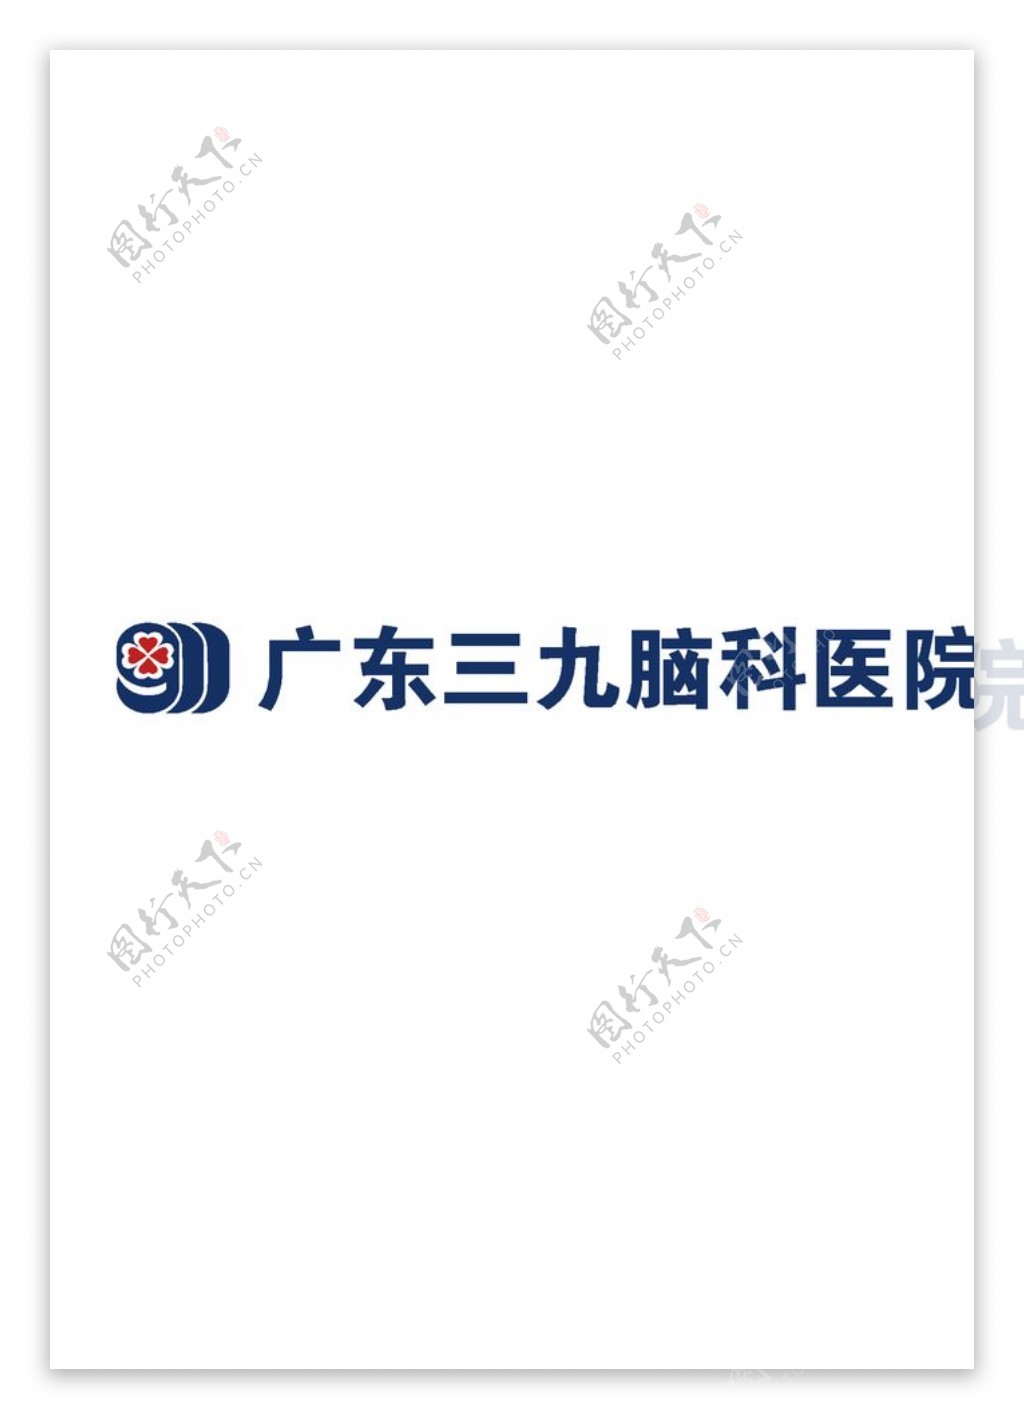 广东三九脑科医院logo图片